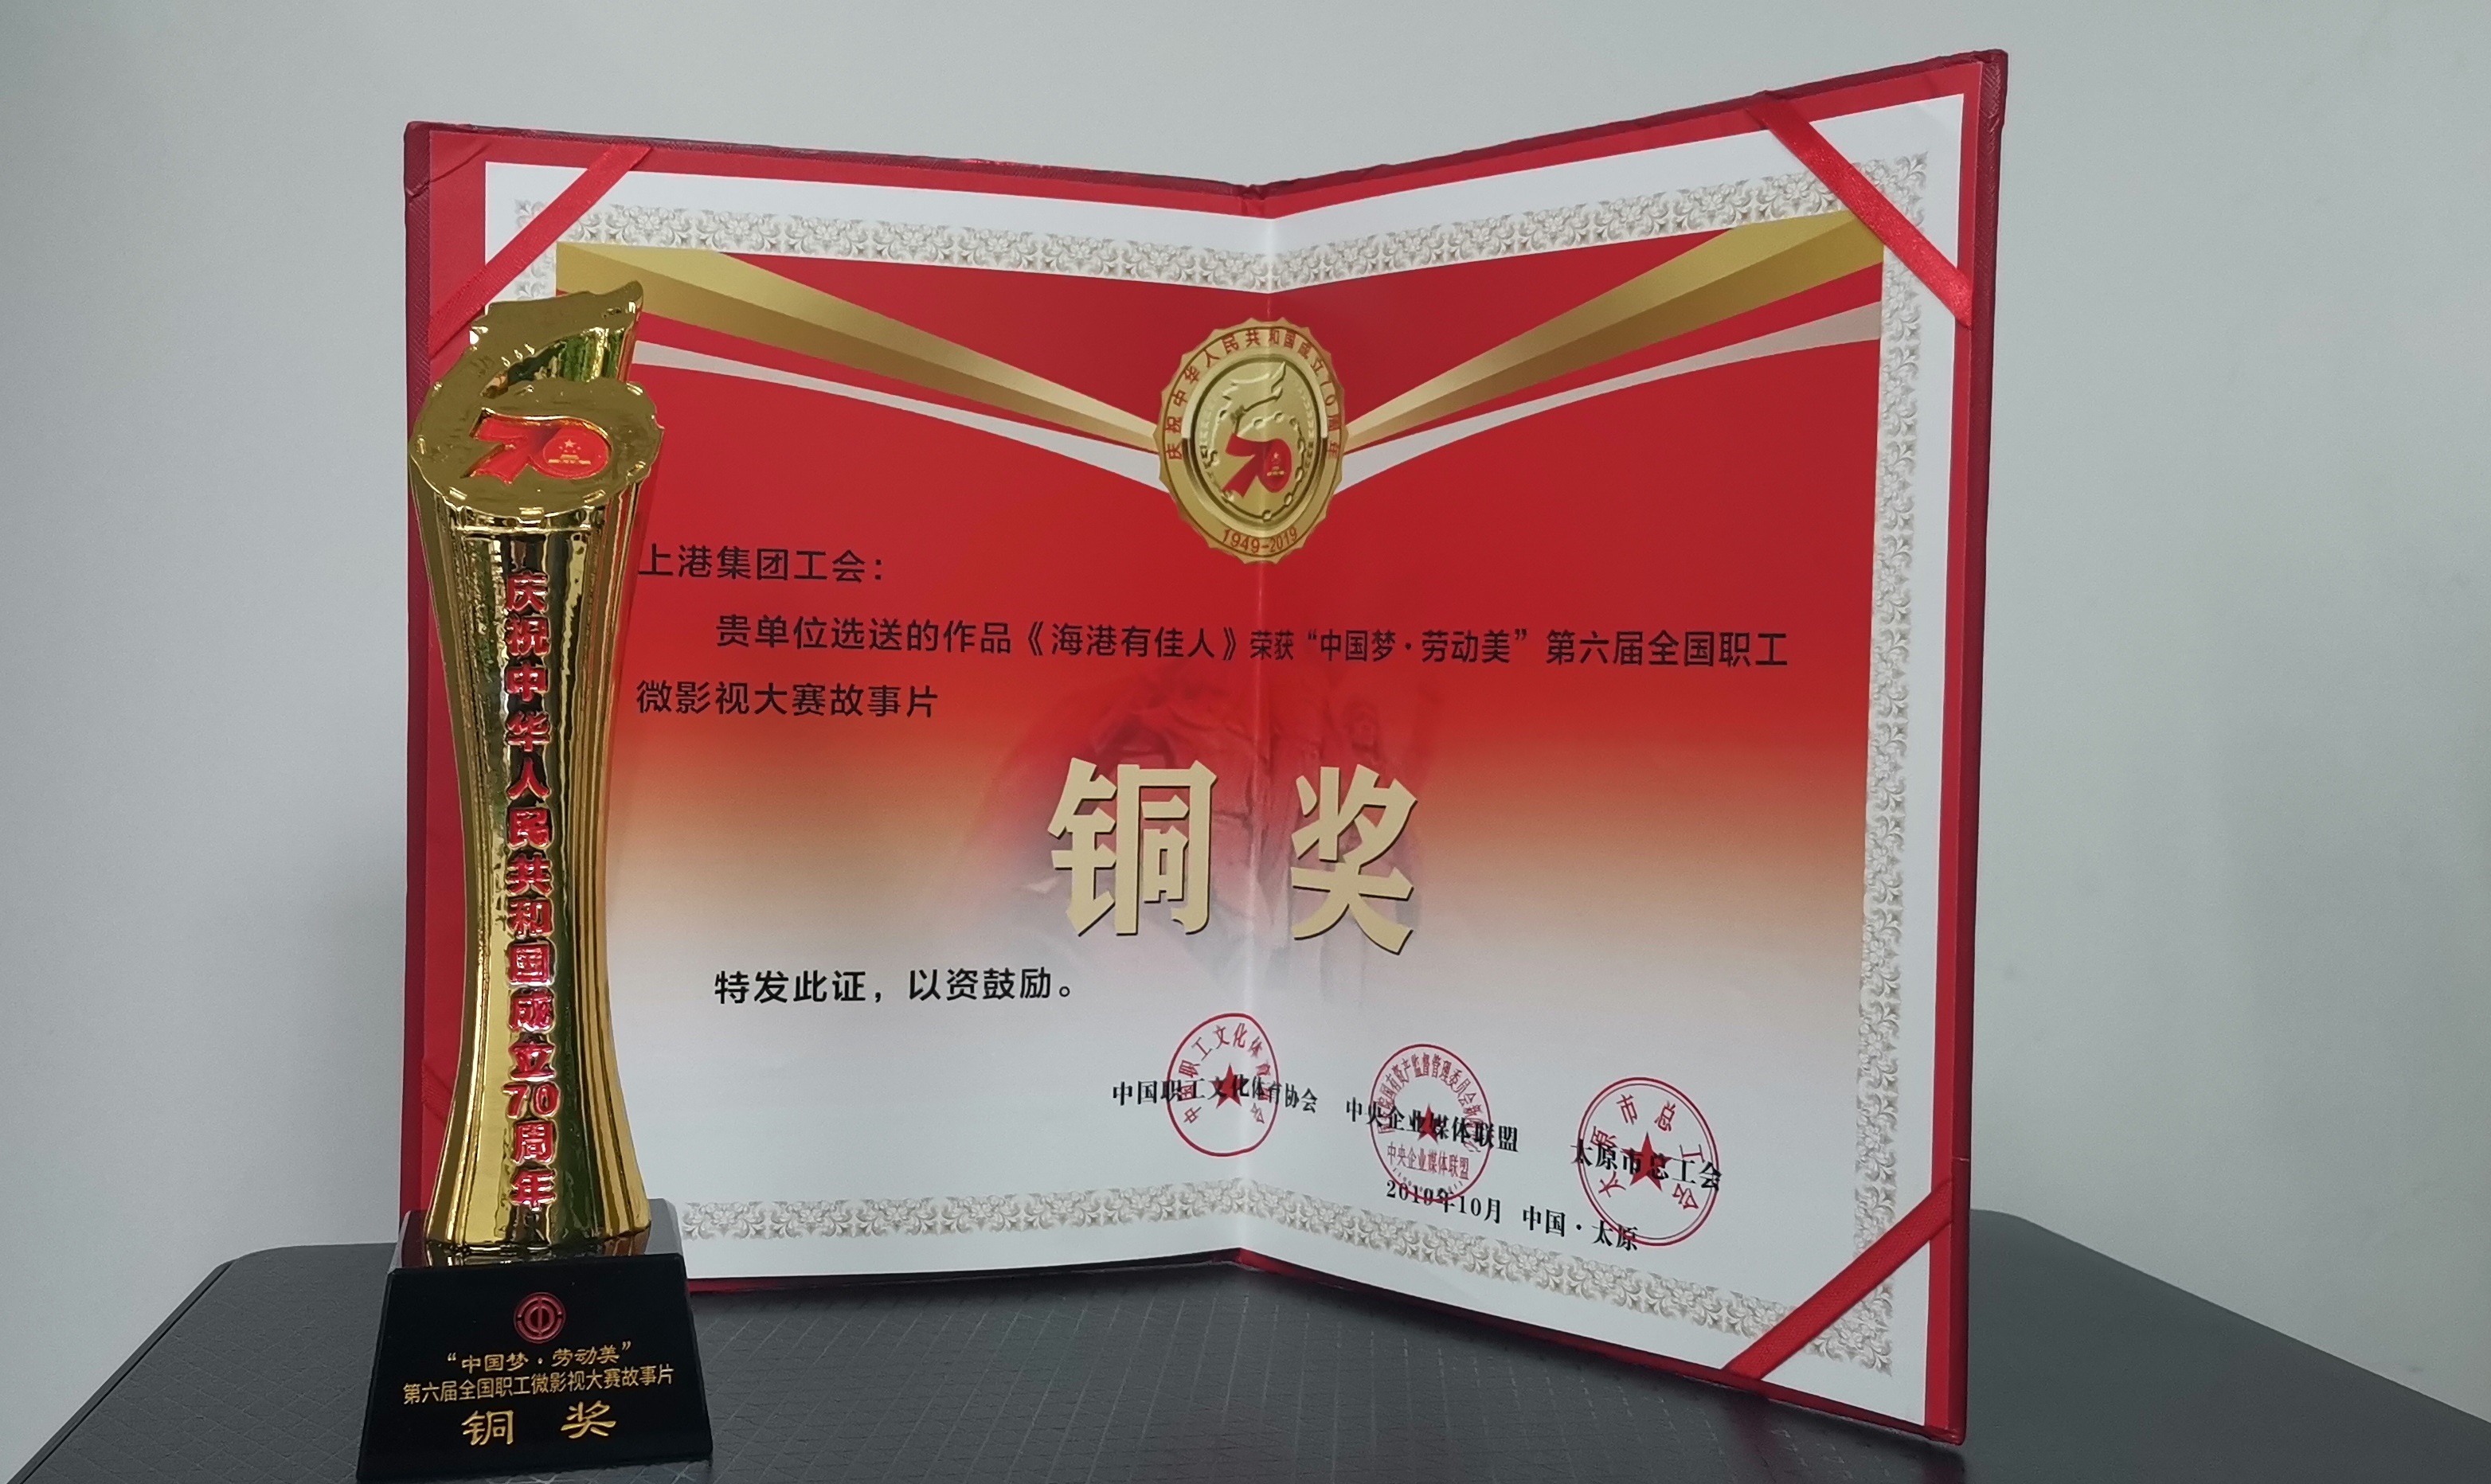 公司微电影《海港有佳人》荣获“中国梦 劳动美”第六届全国职工微影视大赛故事片铜奖。